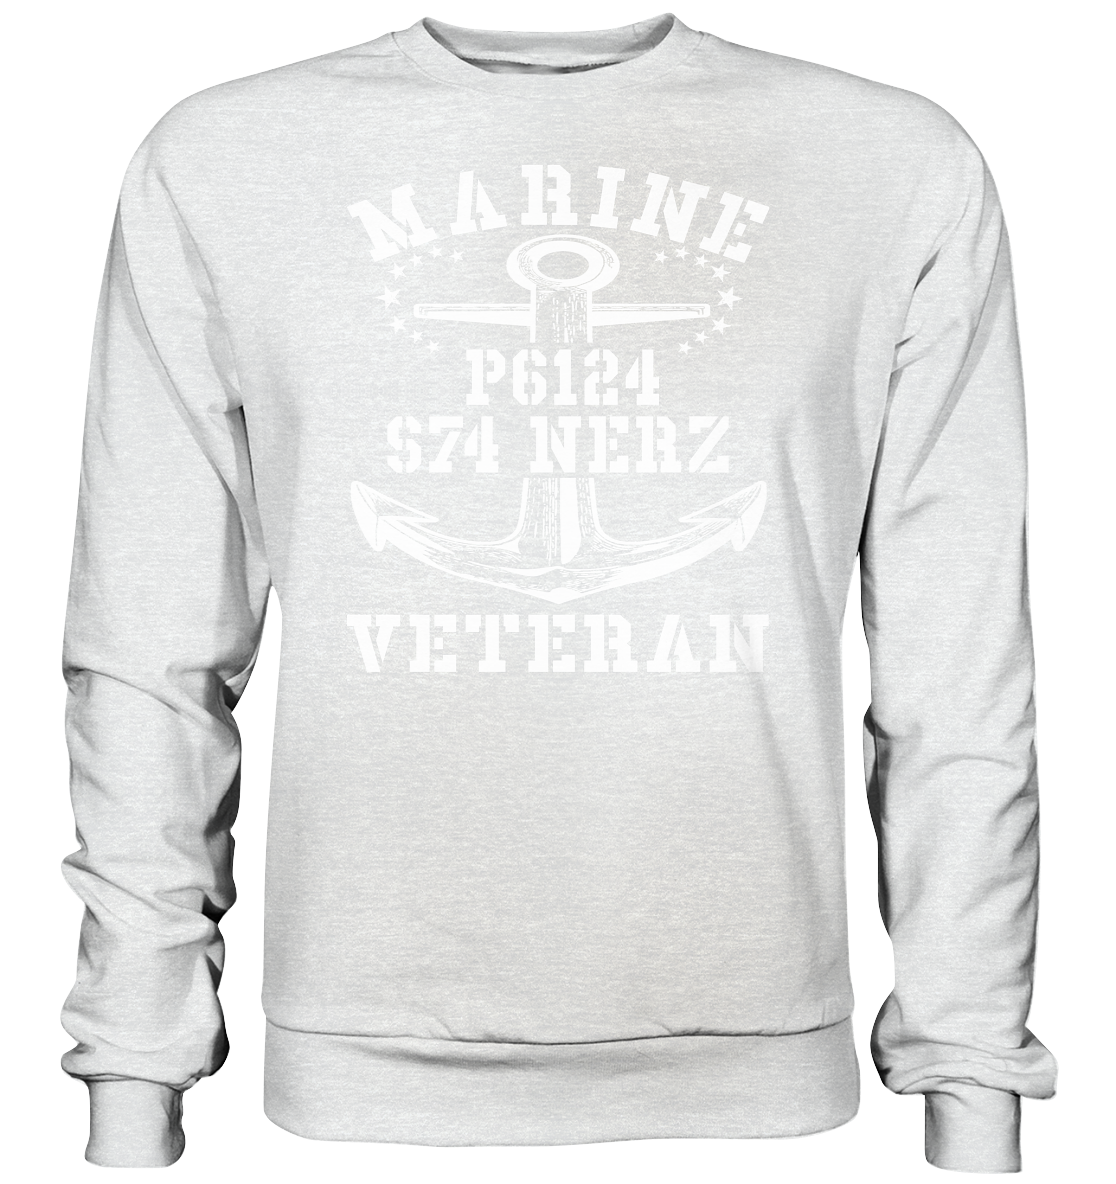 FK-Schnellboot P6124 NERZ Marine Veteran - Premium Sweatshirt